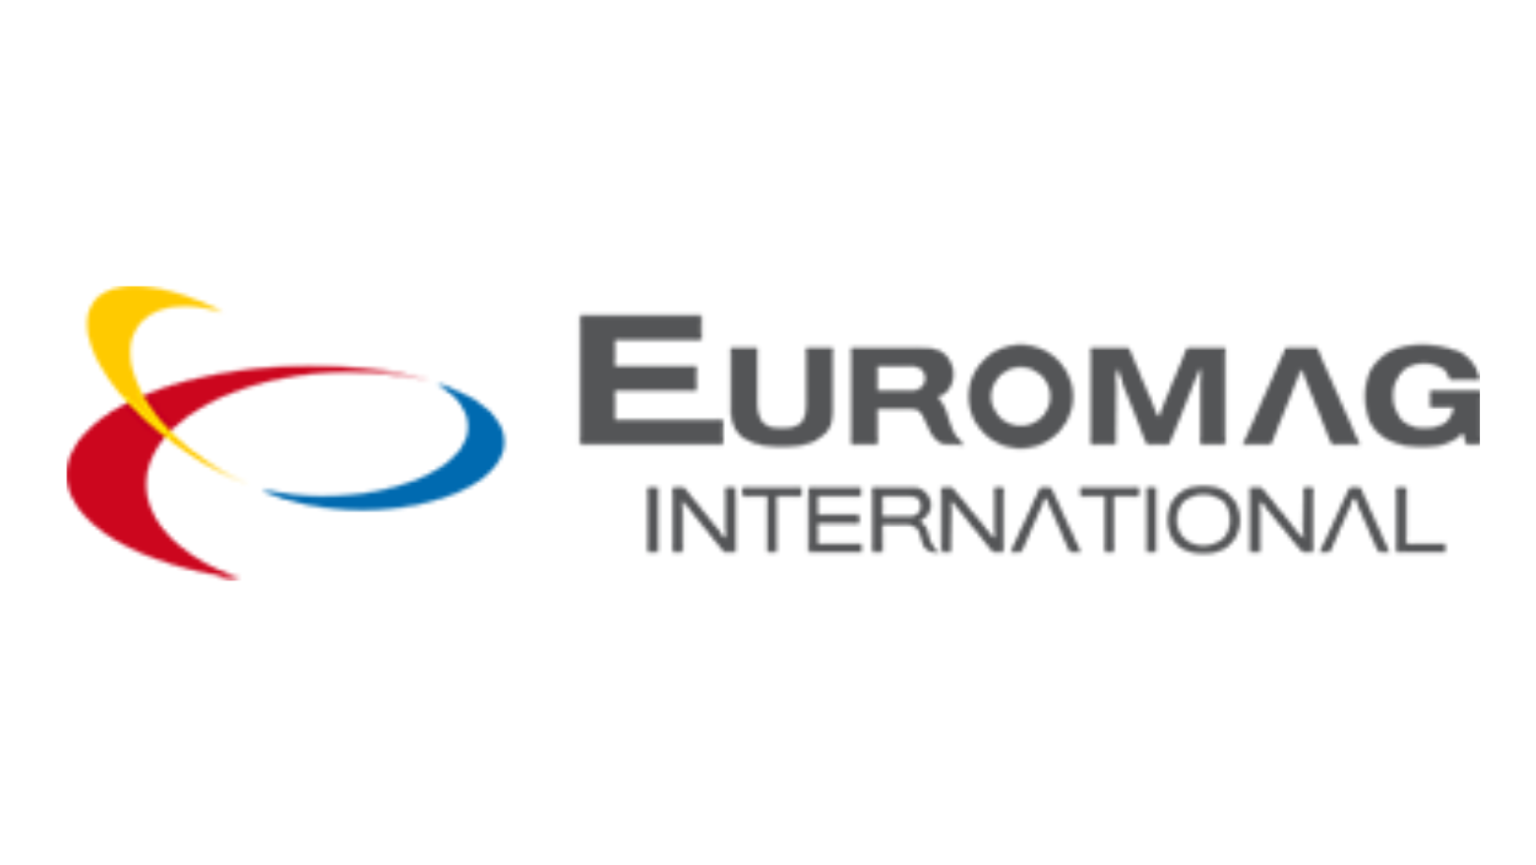 Euromag International